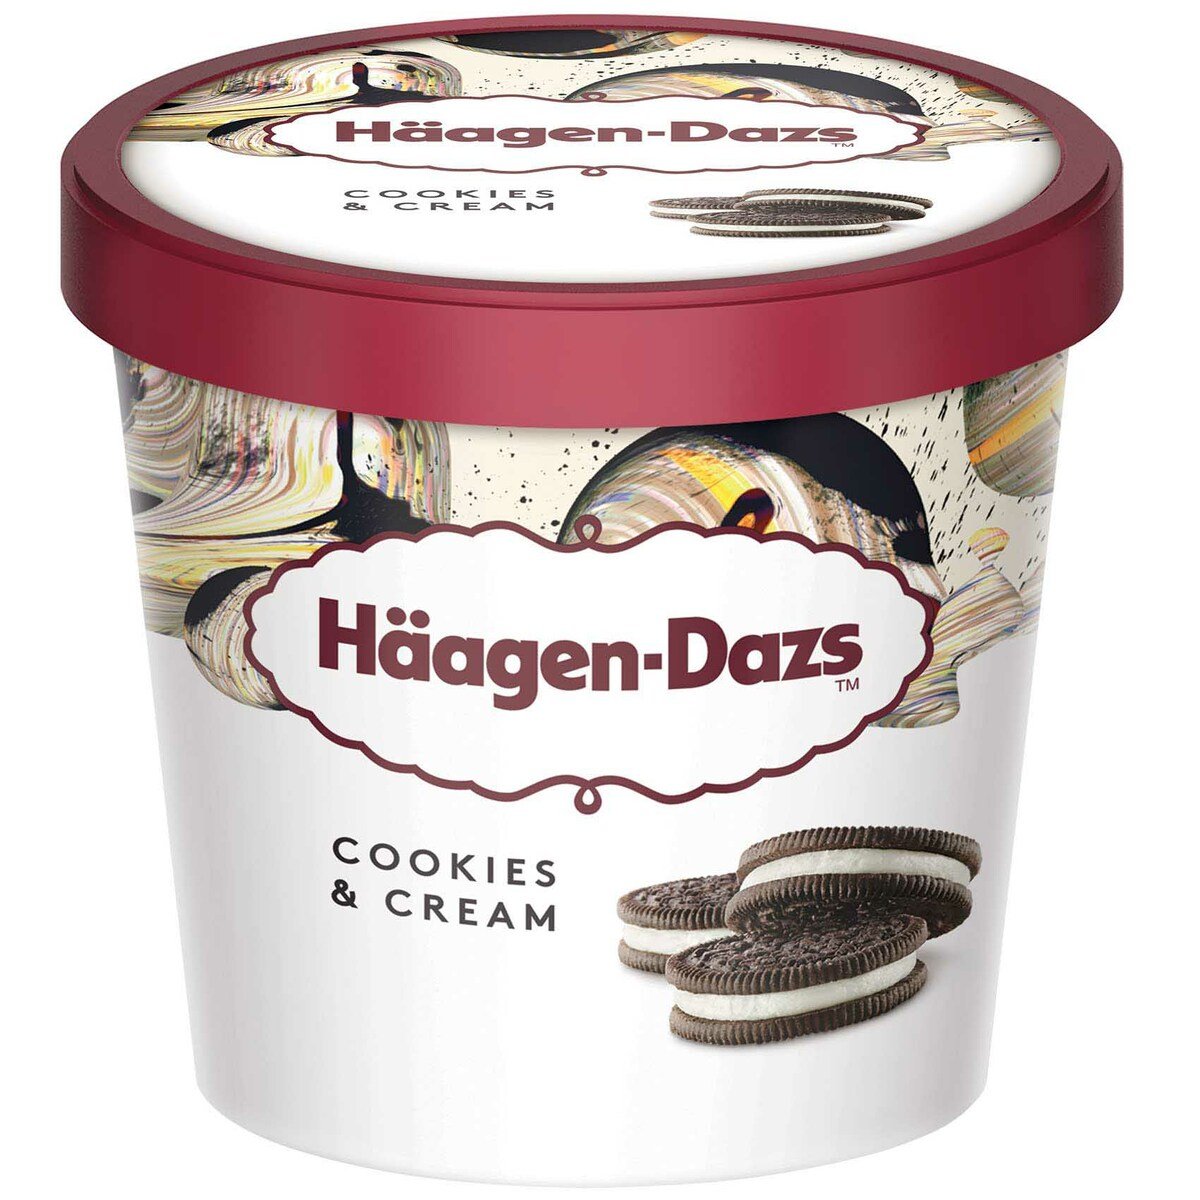 Buy Haagen-Dazs Ice Cream Cookies & Cream 100 ml Online at Best Price | Ice Cream Impulse | Lulu UAE in UAE